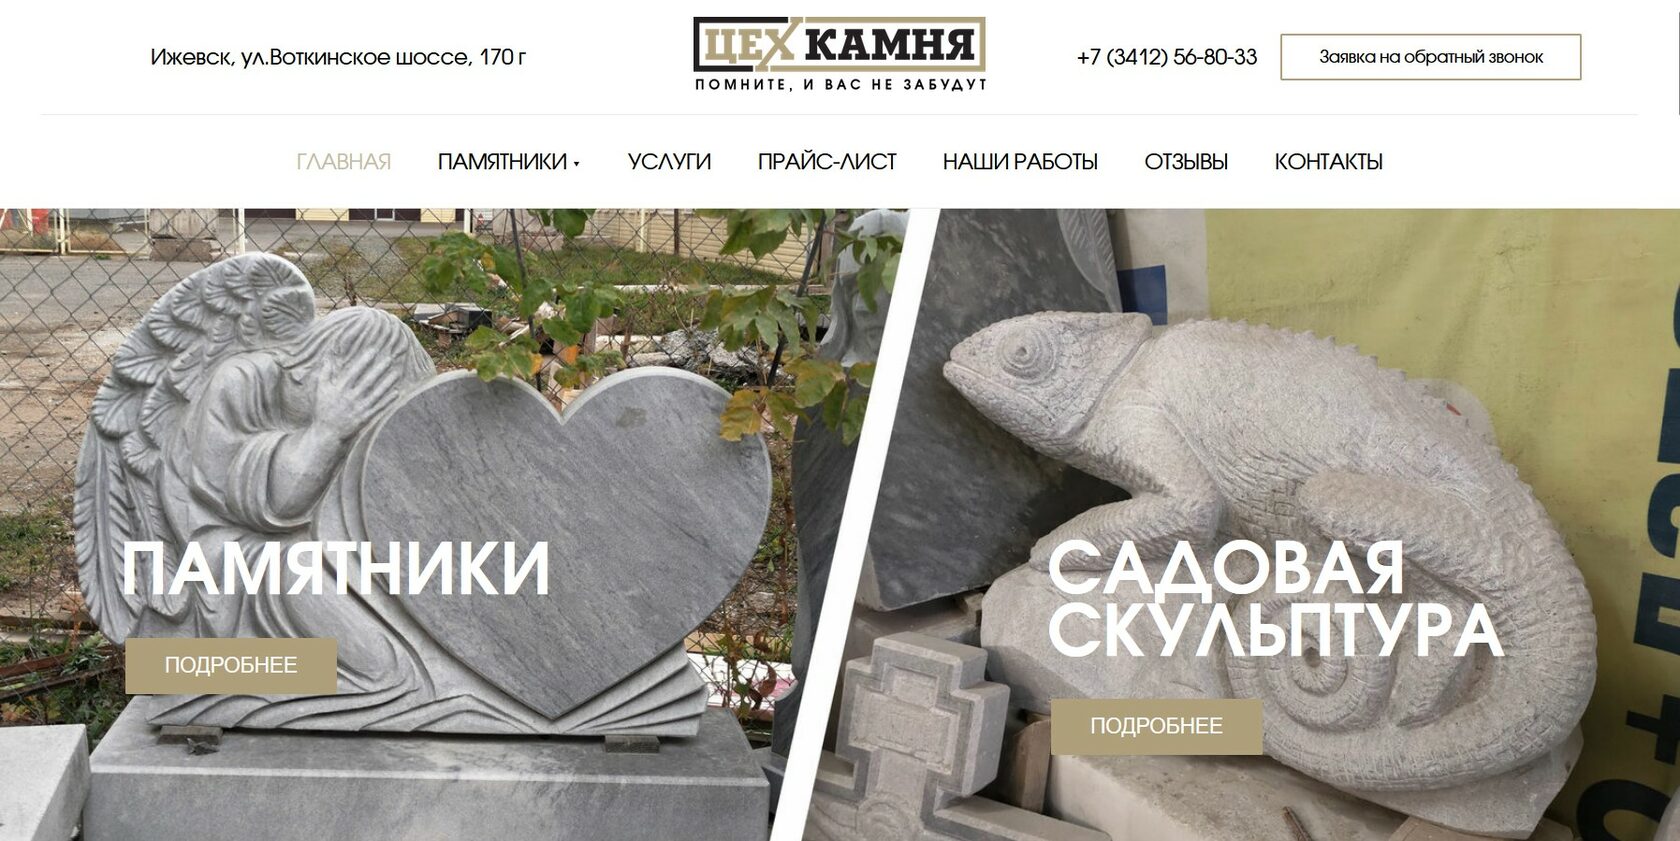 Памятники из гранита в Ижевске | Цены от ₽ - предложений на биржевые-записки.рф